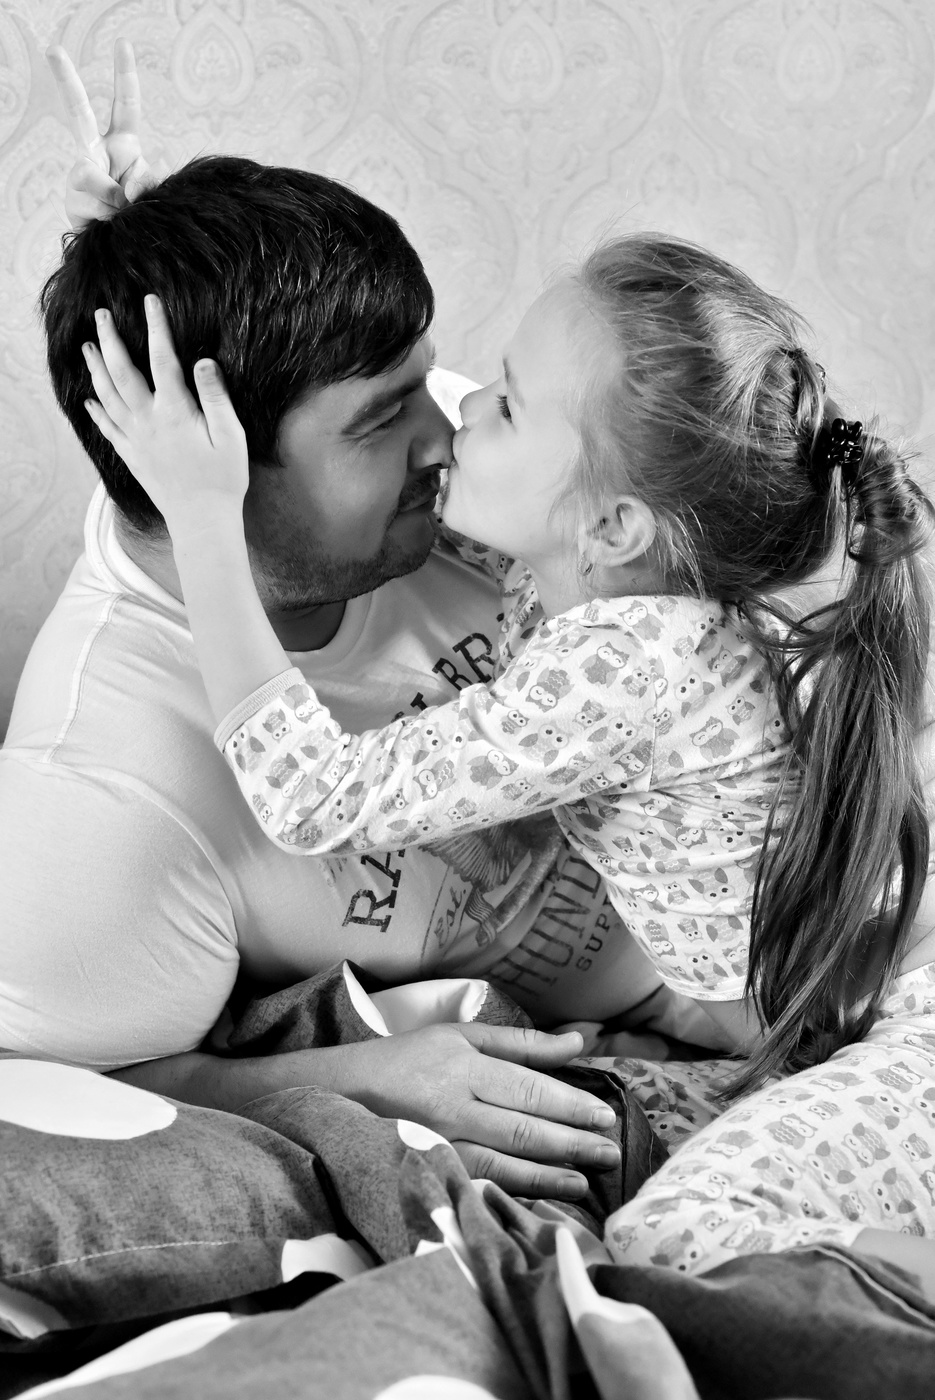 Папа дочка 18 русские. Папа целует дочку. Девочка целует папу. Ласки отца и дочери. Соблазн отца.